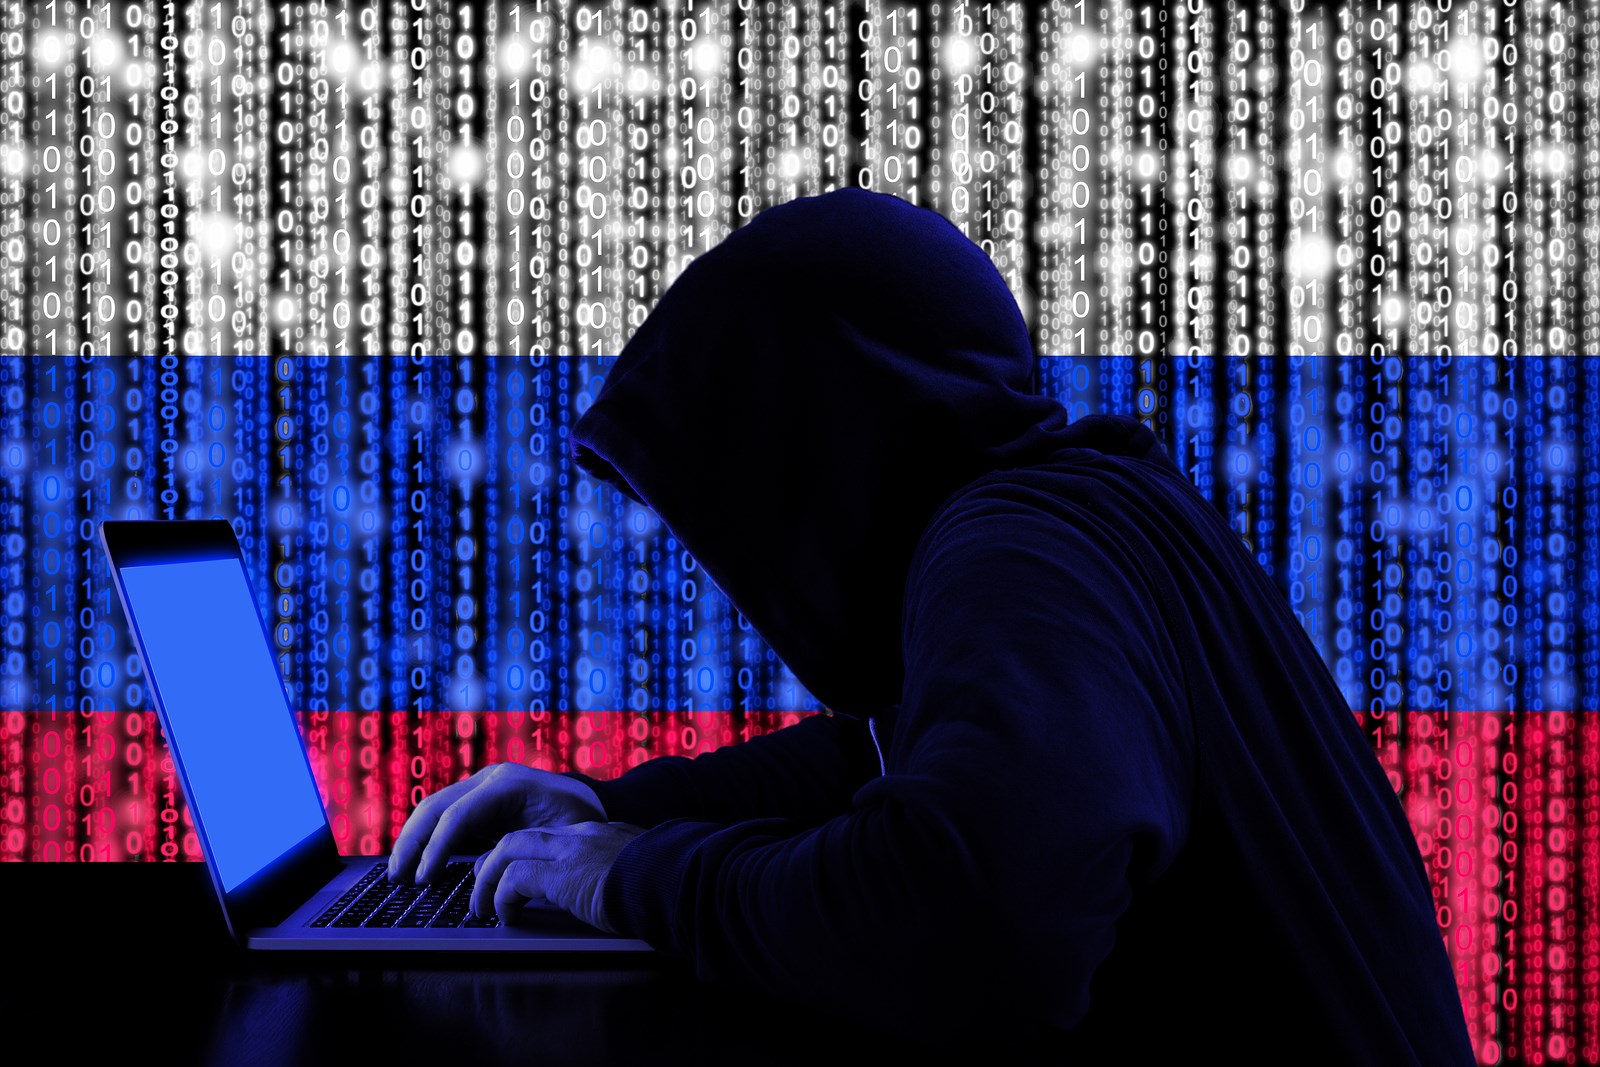 Yabancı menşeili hackerler, ABD Enerji Bakanlığı ile Ulusal Nükleer Güvenlik Ajansına sızdı